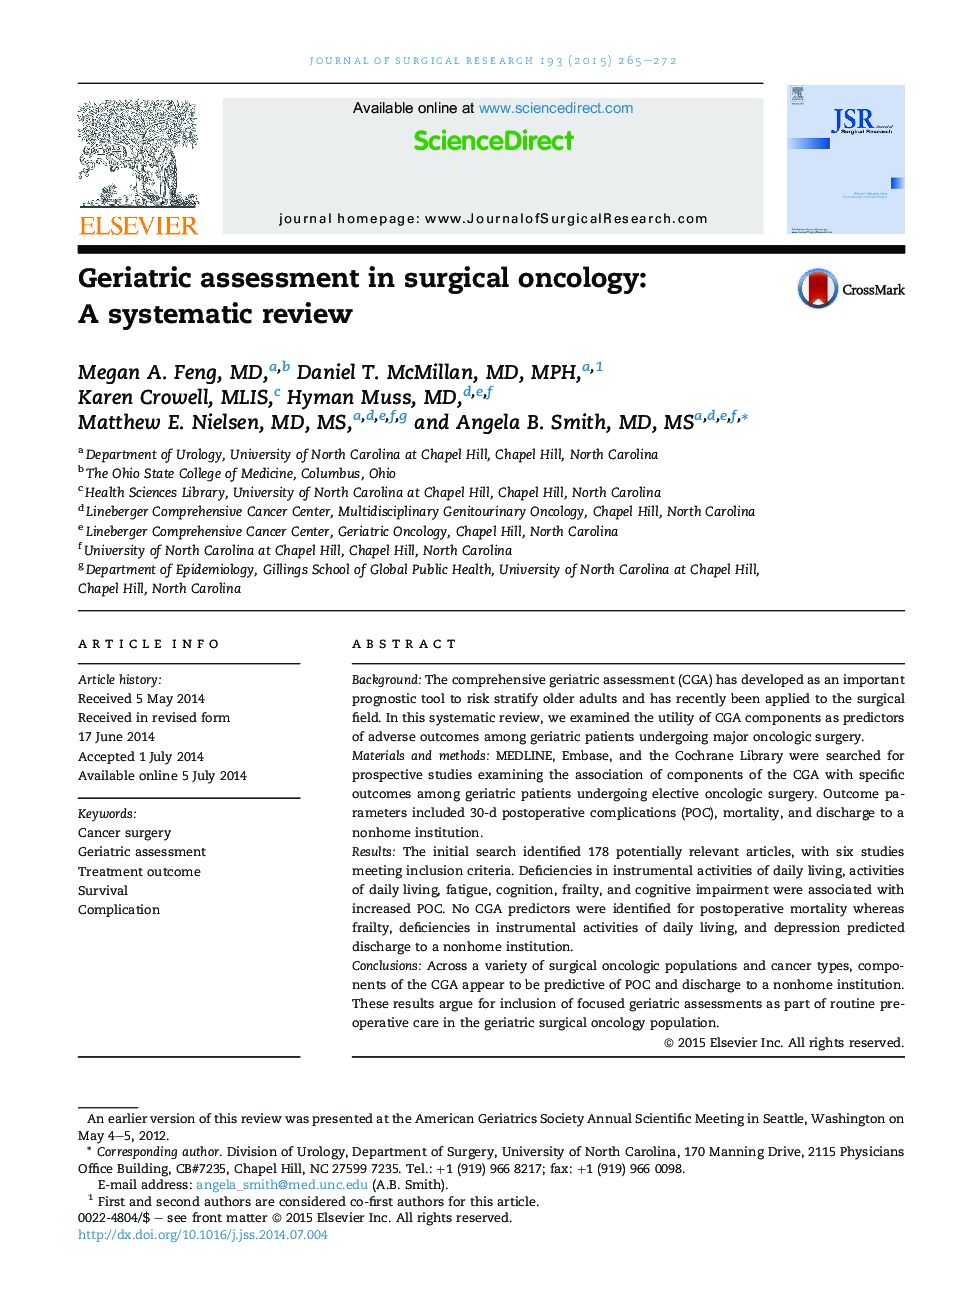 بررسی انکولوژی / ارزیابی غدد درون ریز و سرطان در انکولوژی جراحی: بررسی سیستماتیک 